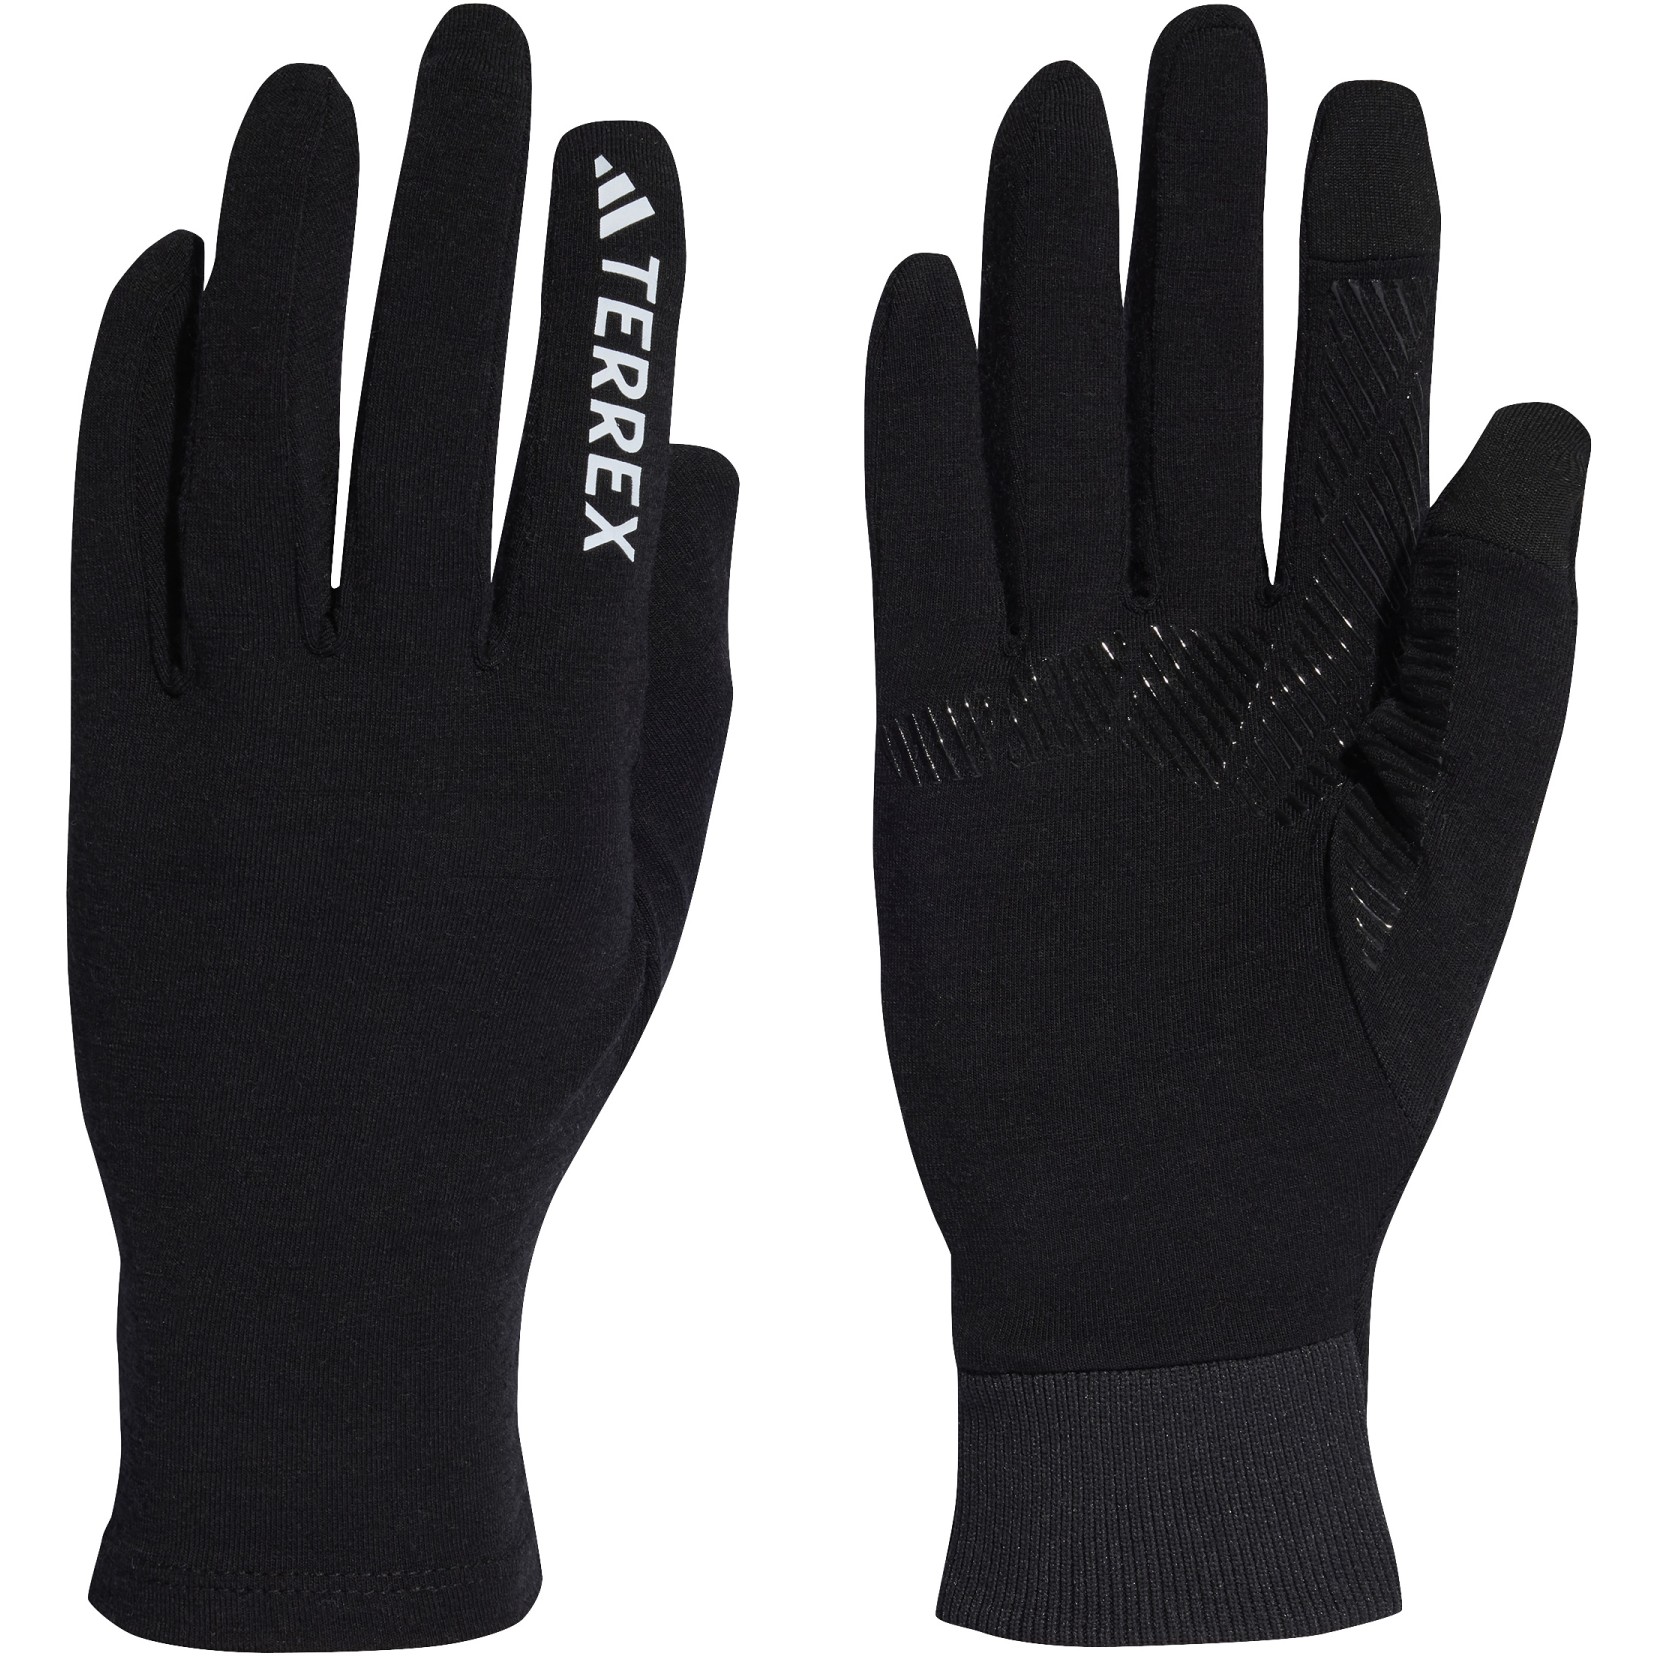 Produktbild von adidas TERREX Merino Wool Handschuhe - schwarz HS7987